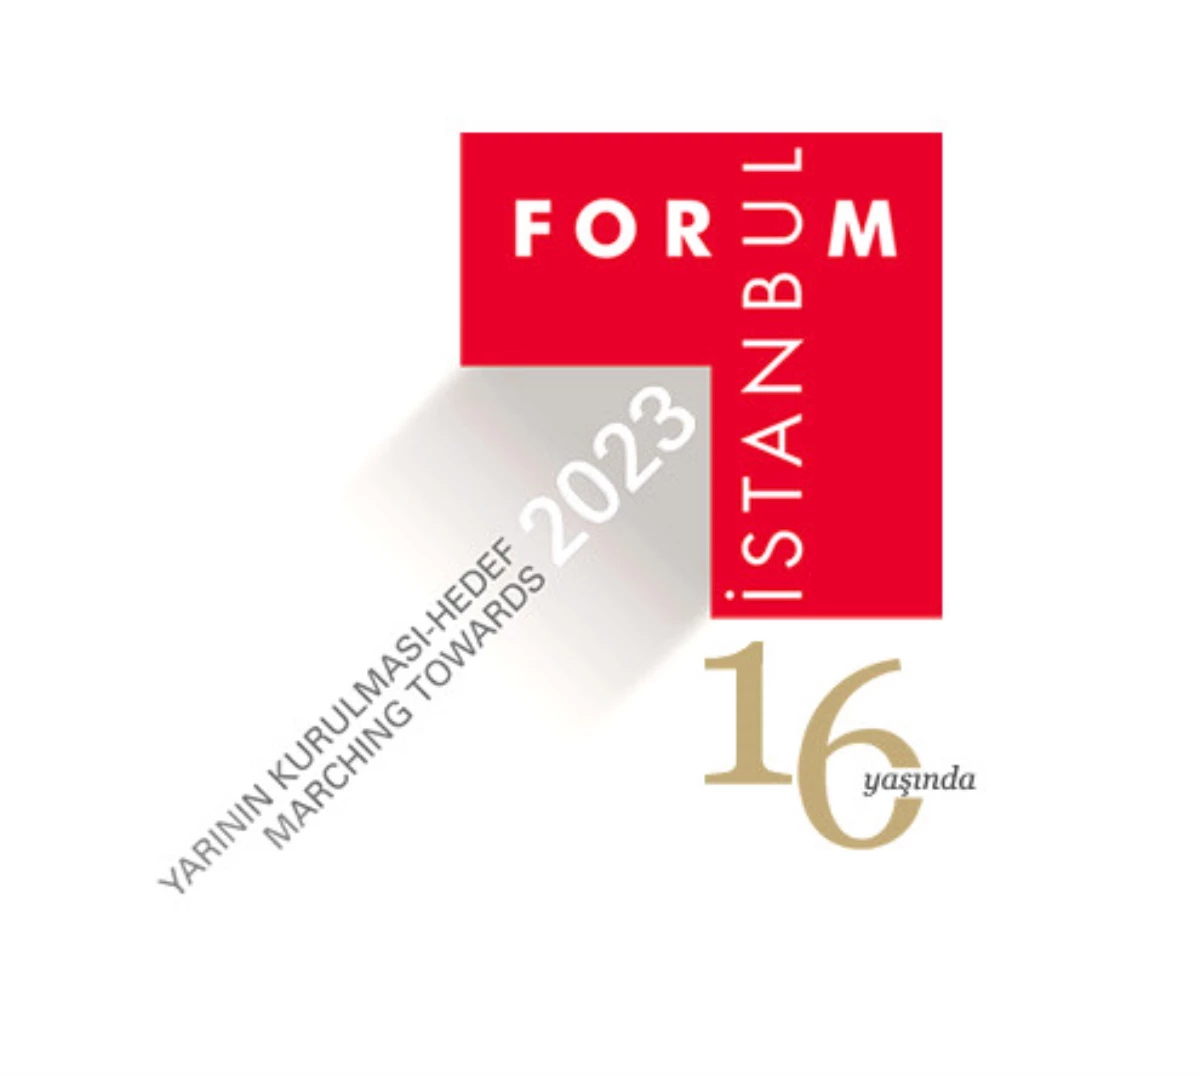 Forum İstanbul 2017 İçin Geri Sayım